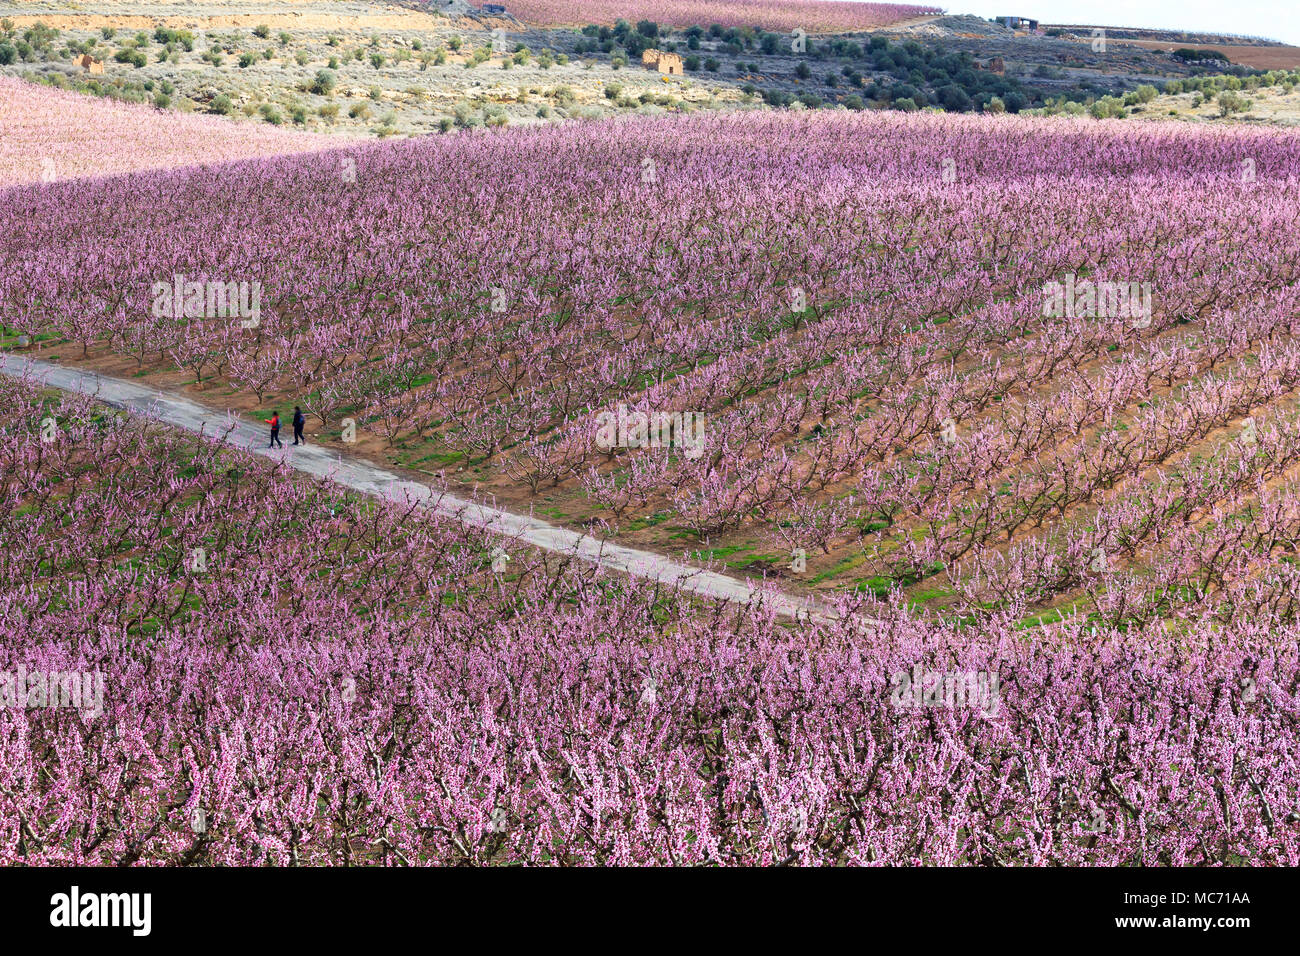 Gli escursionisti a piedi in campi di pesco in fiore rosa a molla, ad Aitona, Catalogna, Spagna Foto Stock